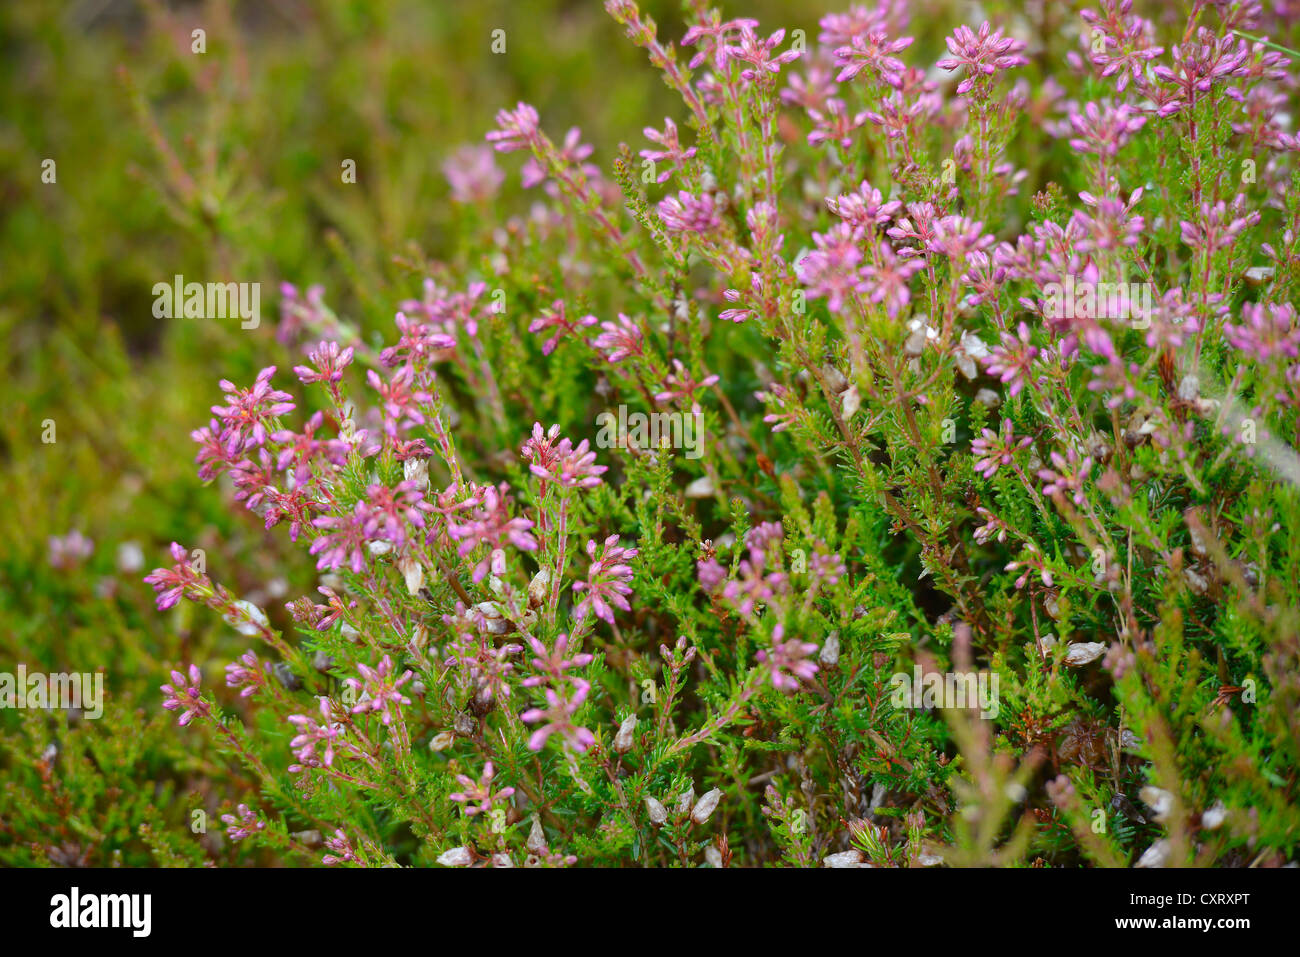 Heather in fiore nelle Highlands scozzesi, Grampian Mountains, Scotland, Regno Unito, Europa Foto Stock